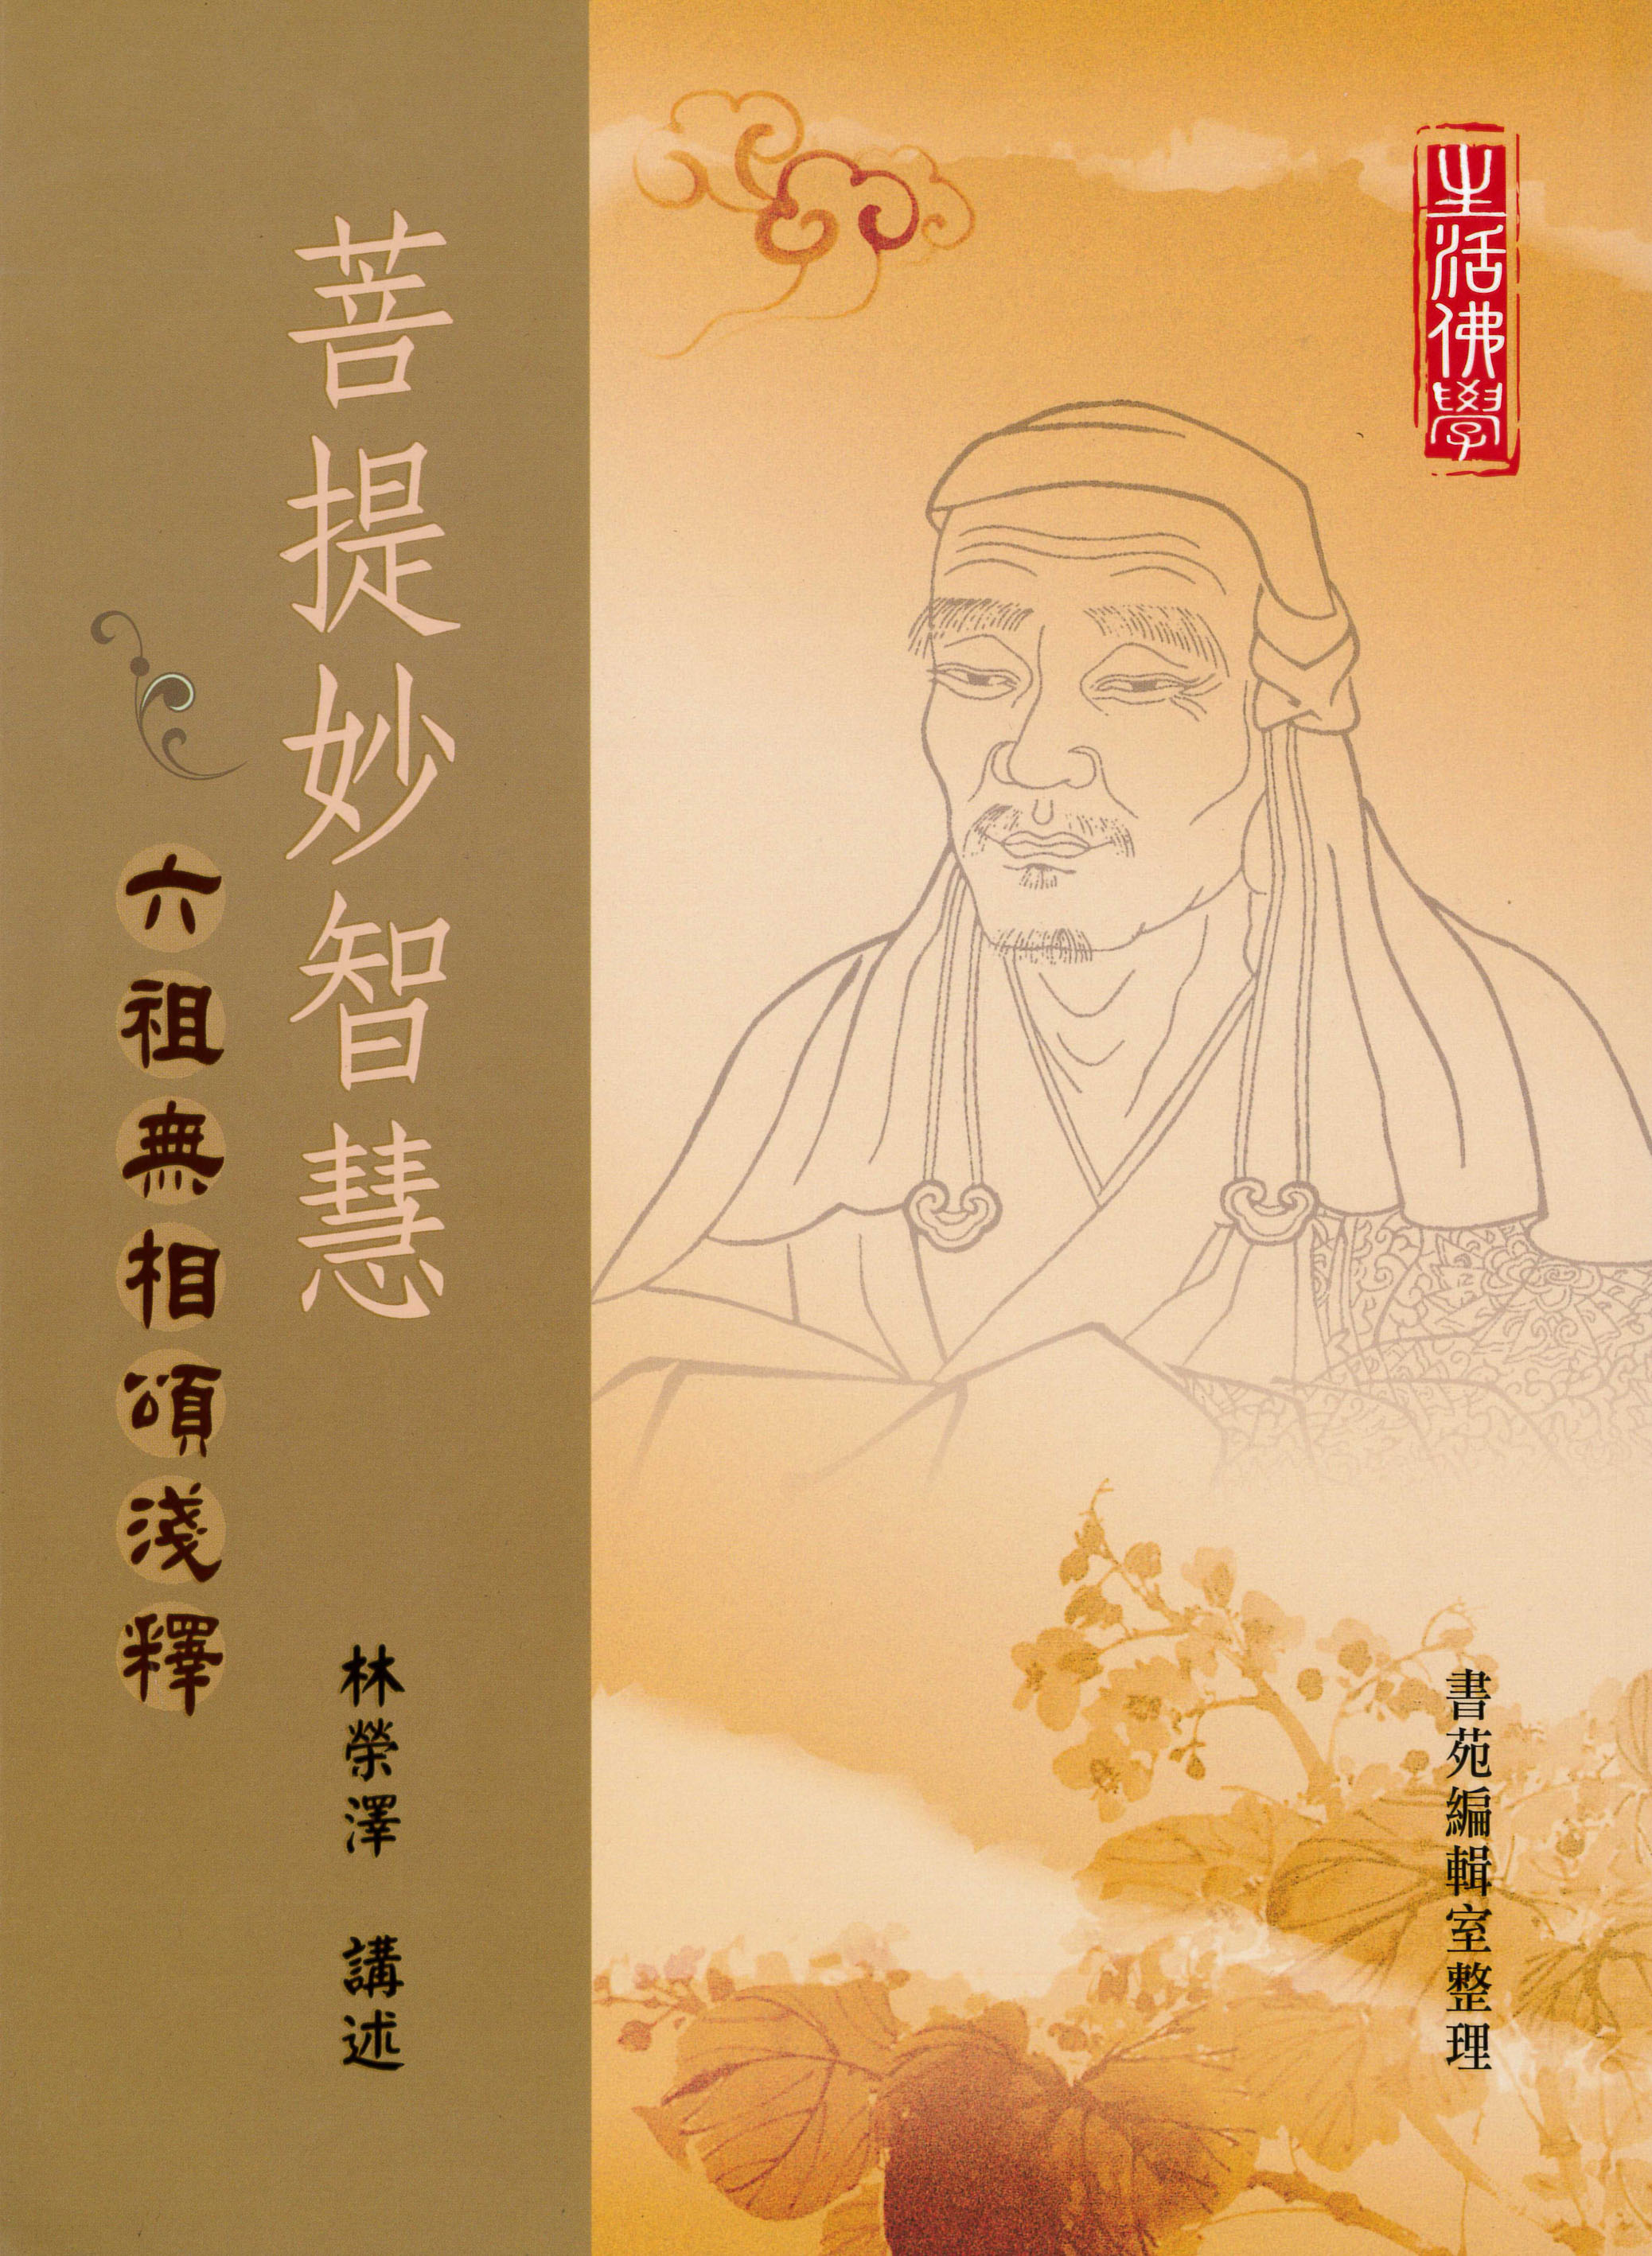 最新 6巻揃 釋摩柯衍論記 宋普觀述 稀少 検索 宋版 唐本 和本 仏教